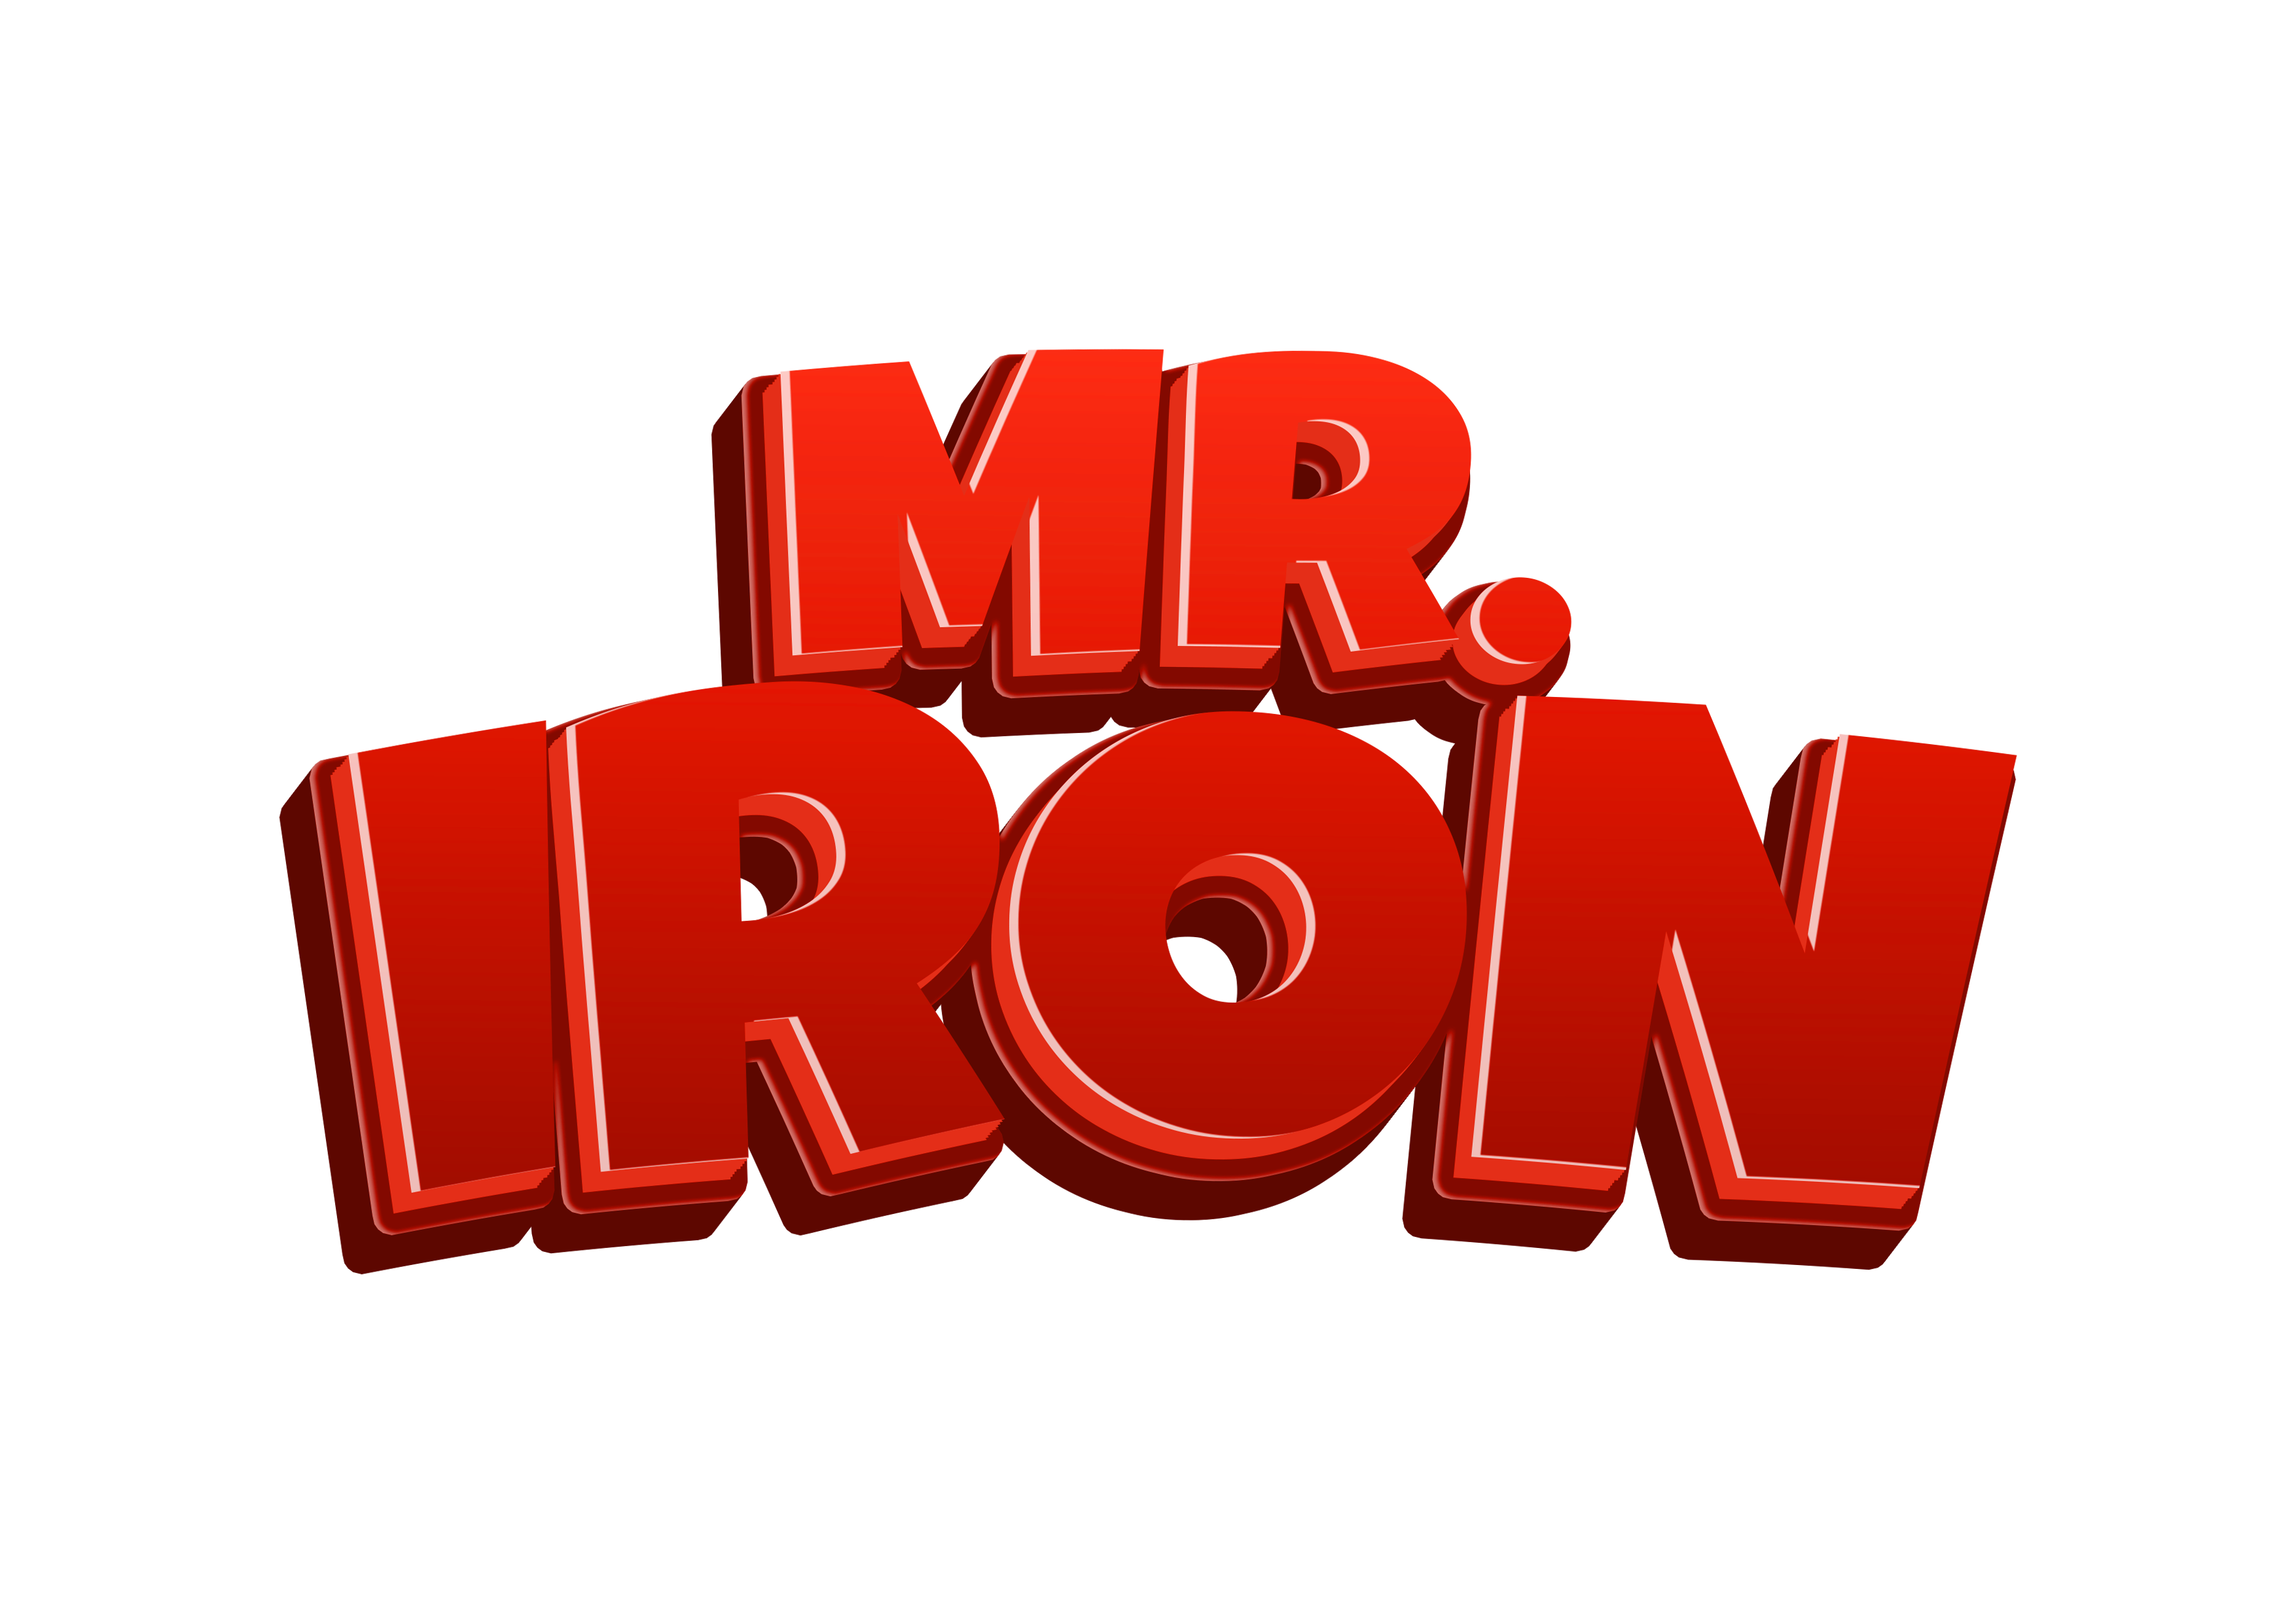 Mr. Iron